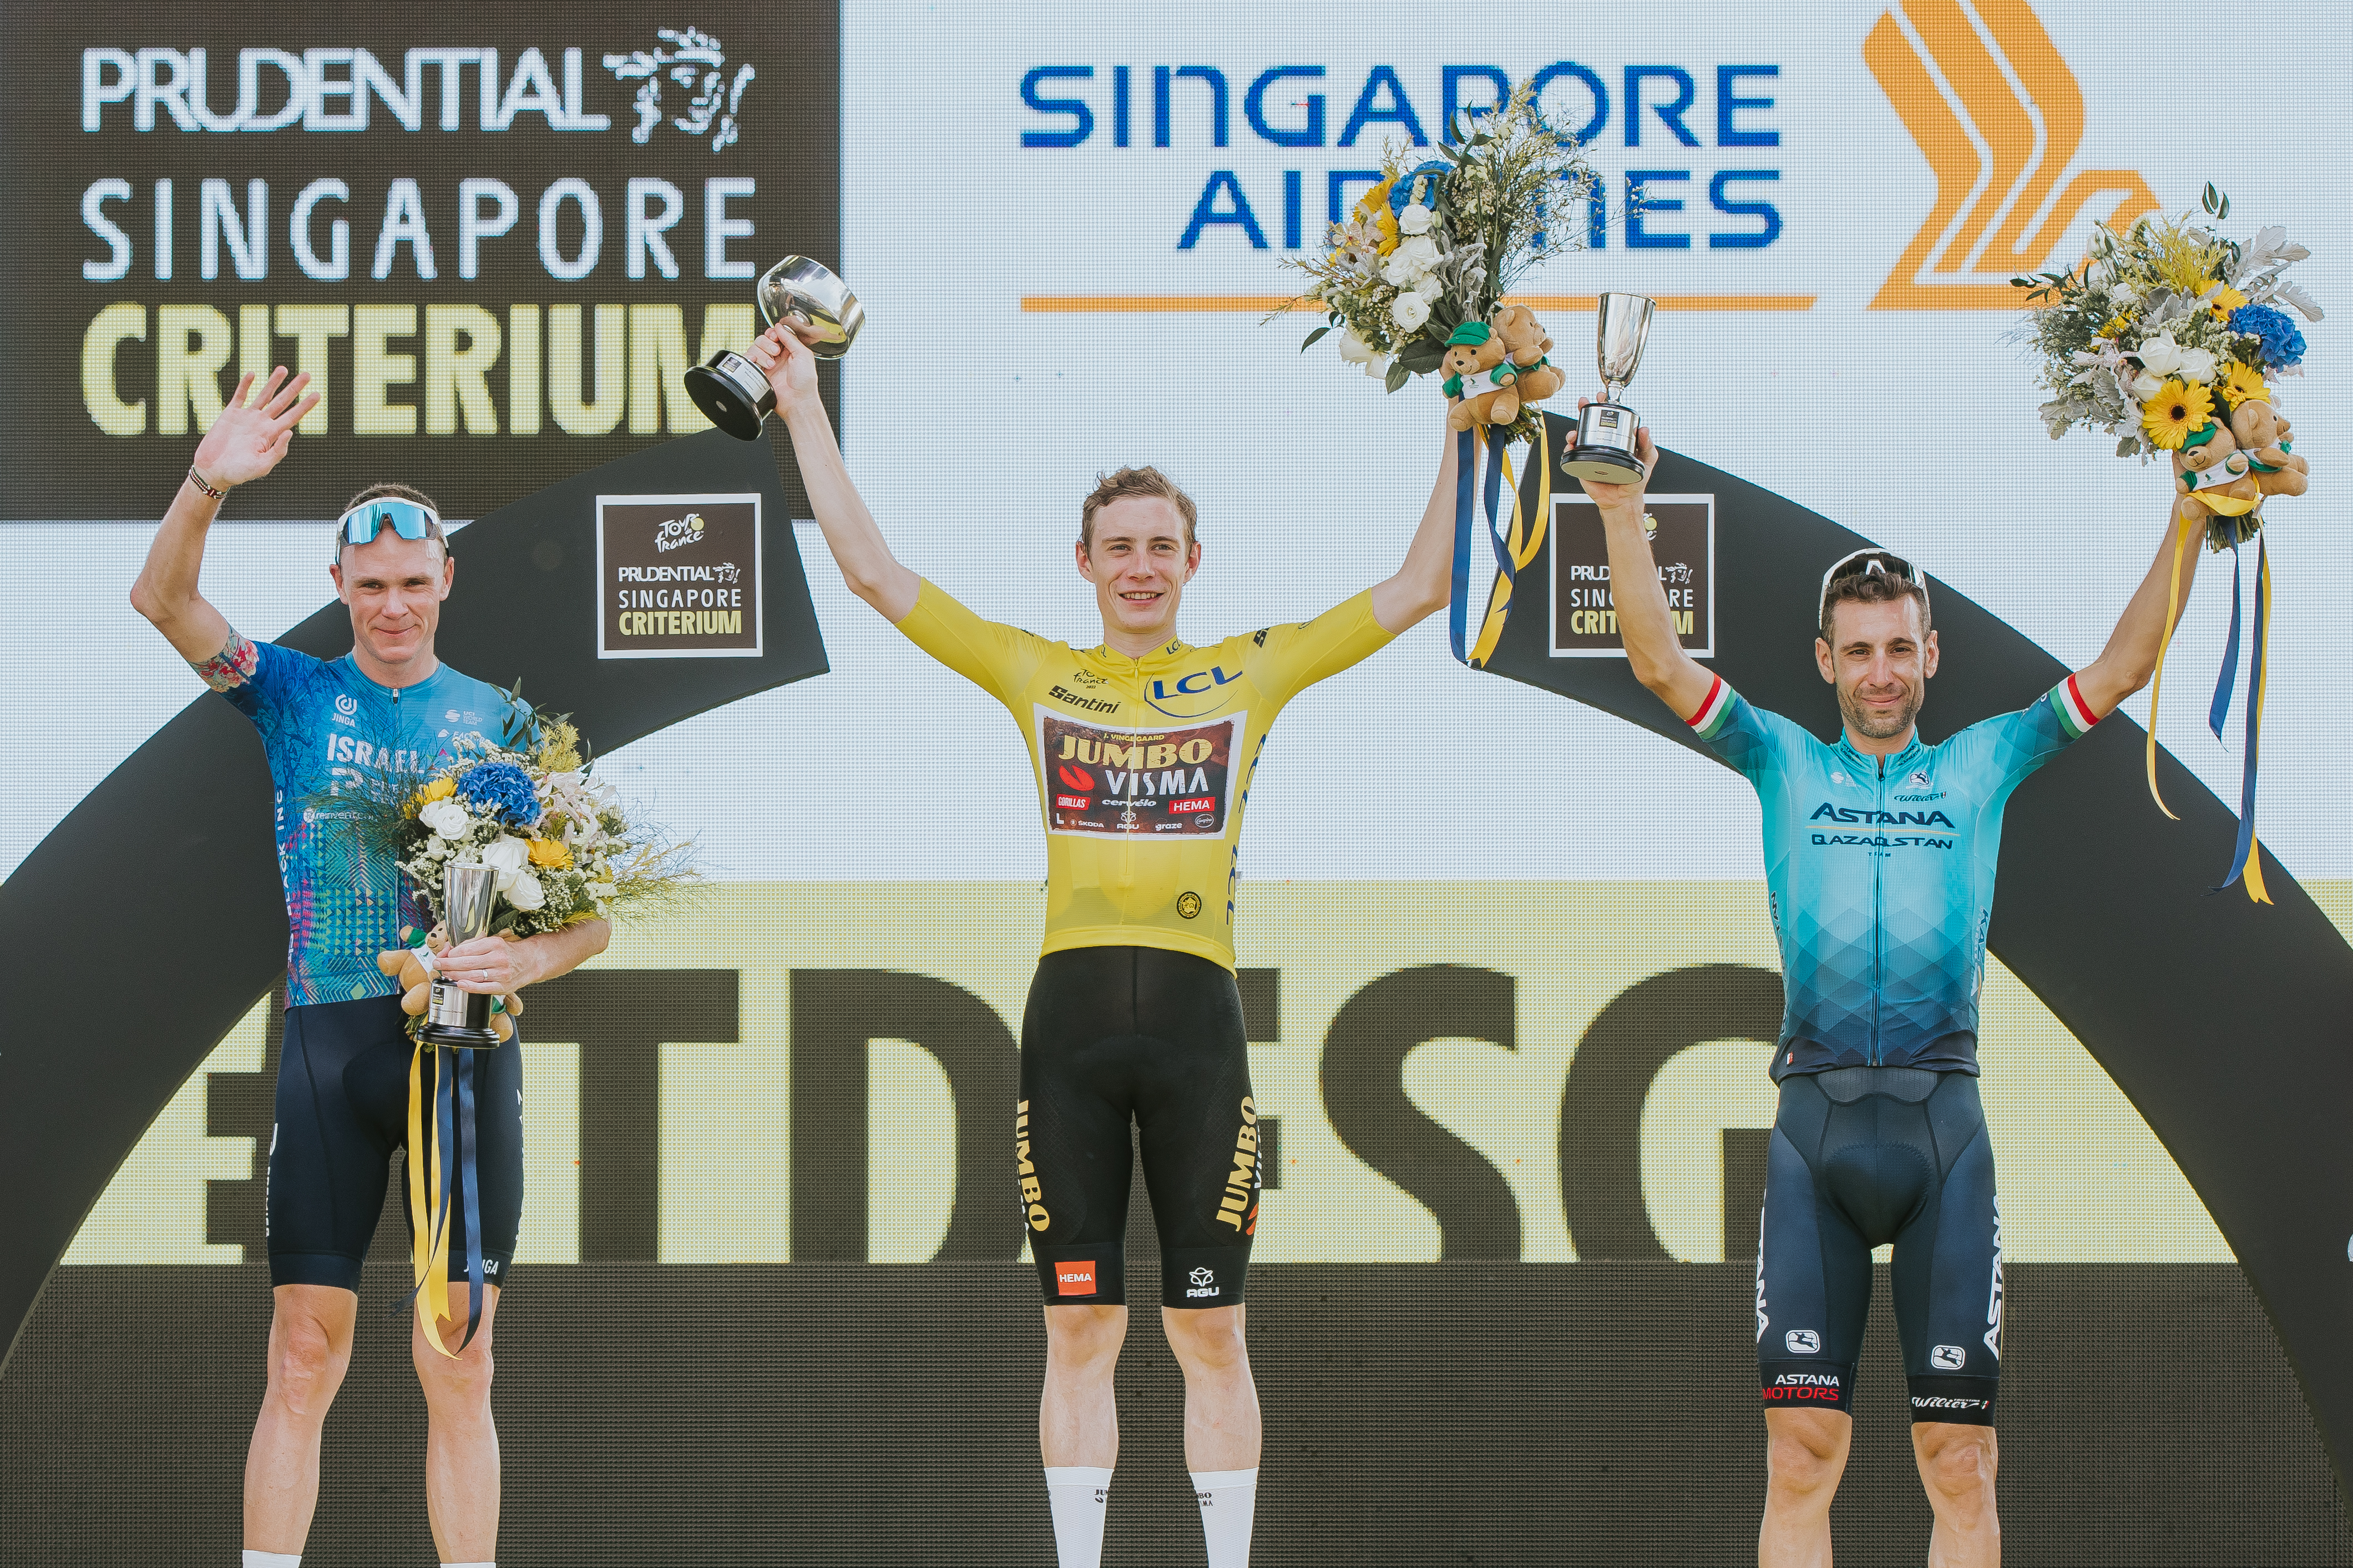 Tour de France Champion Jonas Vingegaard, wins inaugural Tour de France Prudential Singapore Criterium!